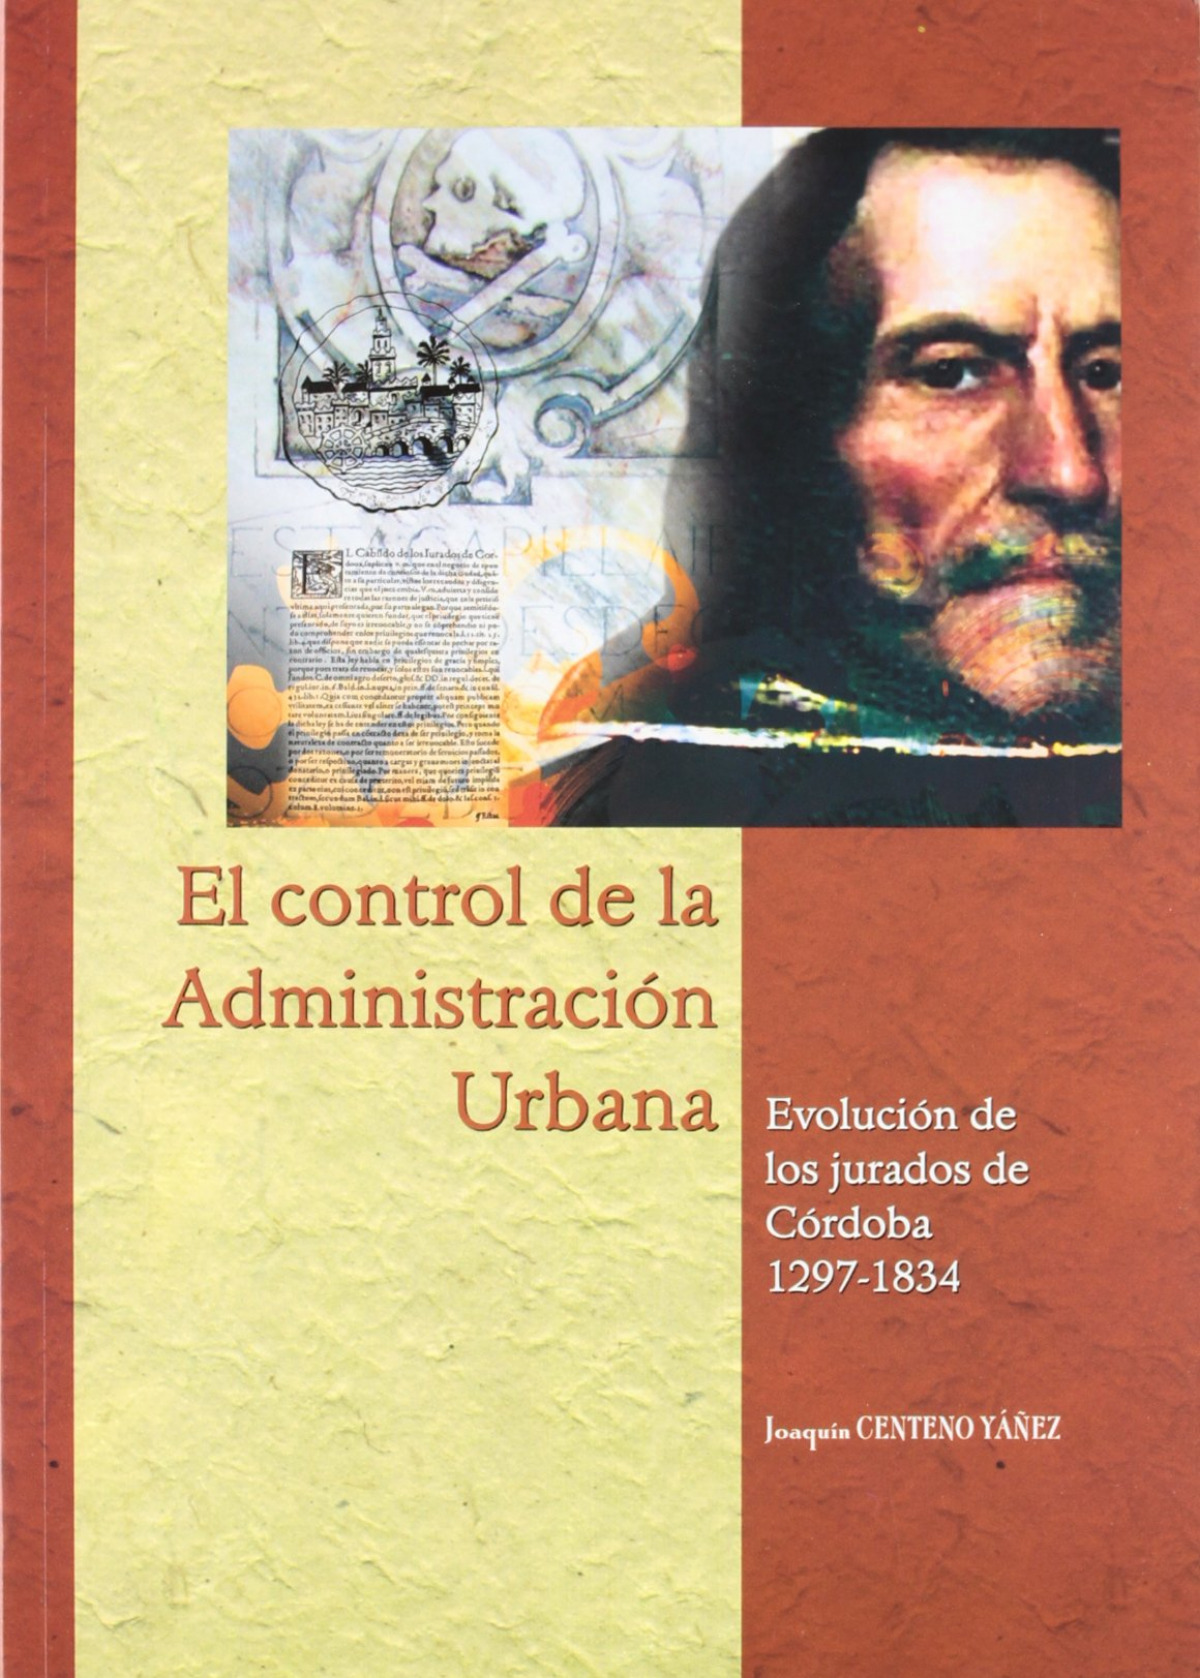 El control de la administración urbana. Evolución de los jurados de Córdoba, 1297-1834 - Centeno Yáñez, Joaquín